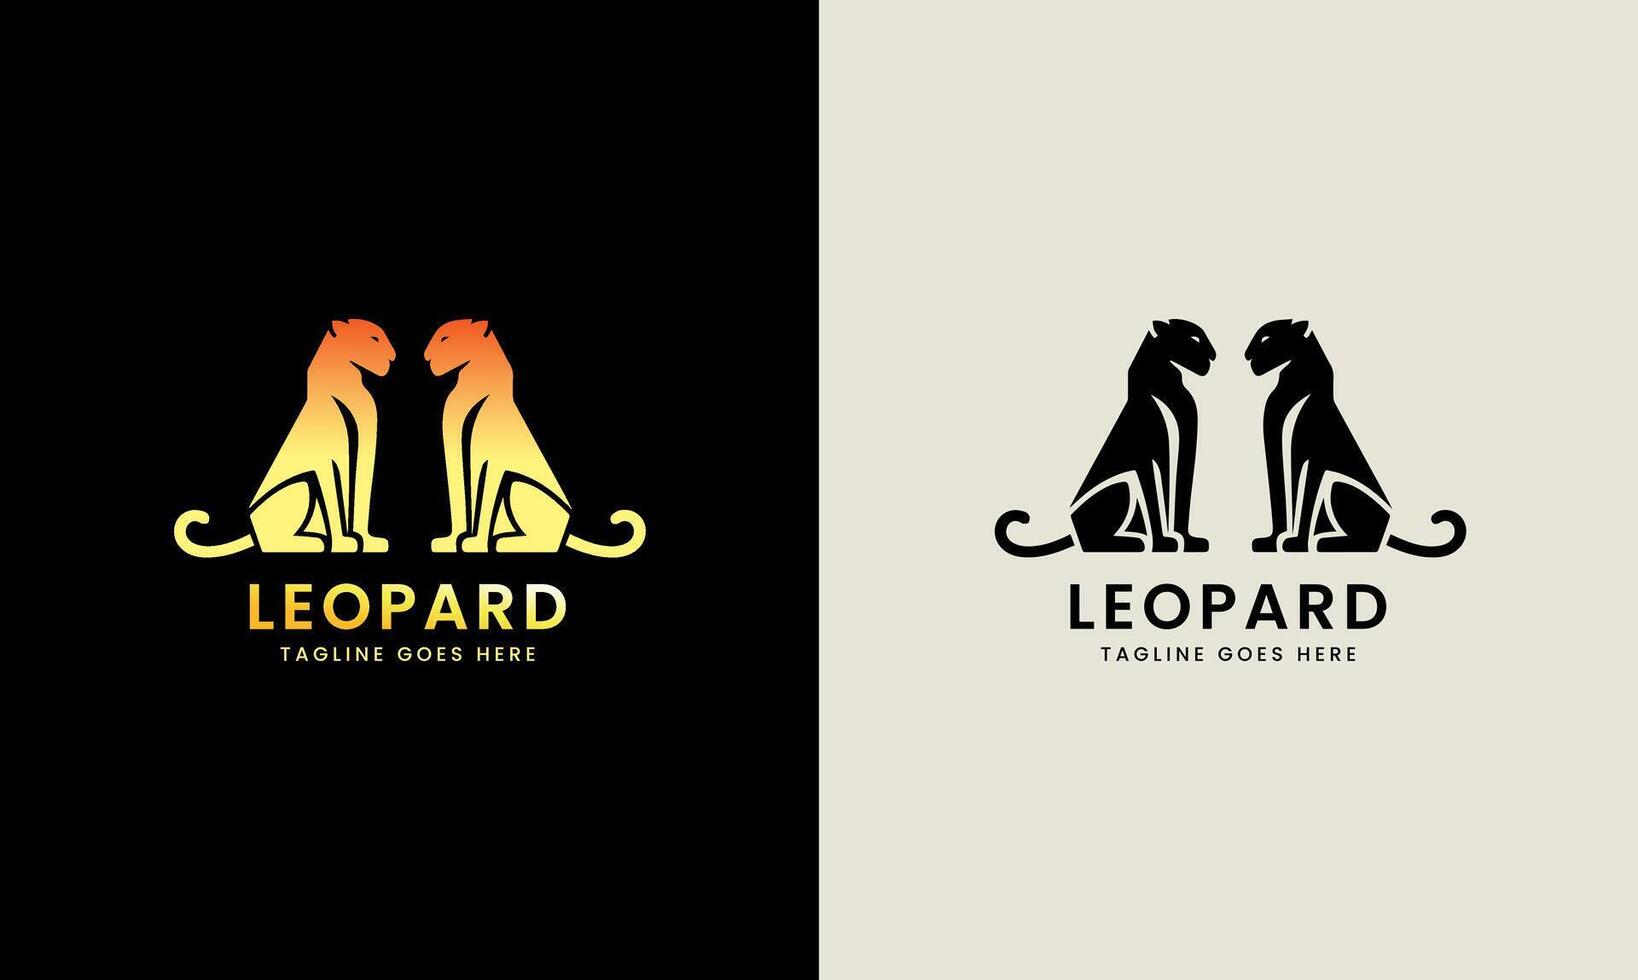 leopardo ícone símbolo puma, jaguar cabeça, gato tigre animal logotipo modelo imagem ilustração vetor